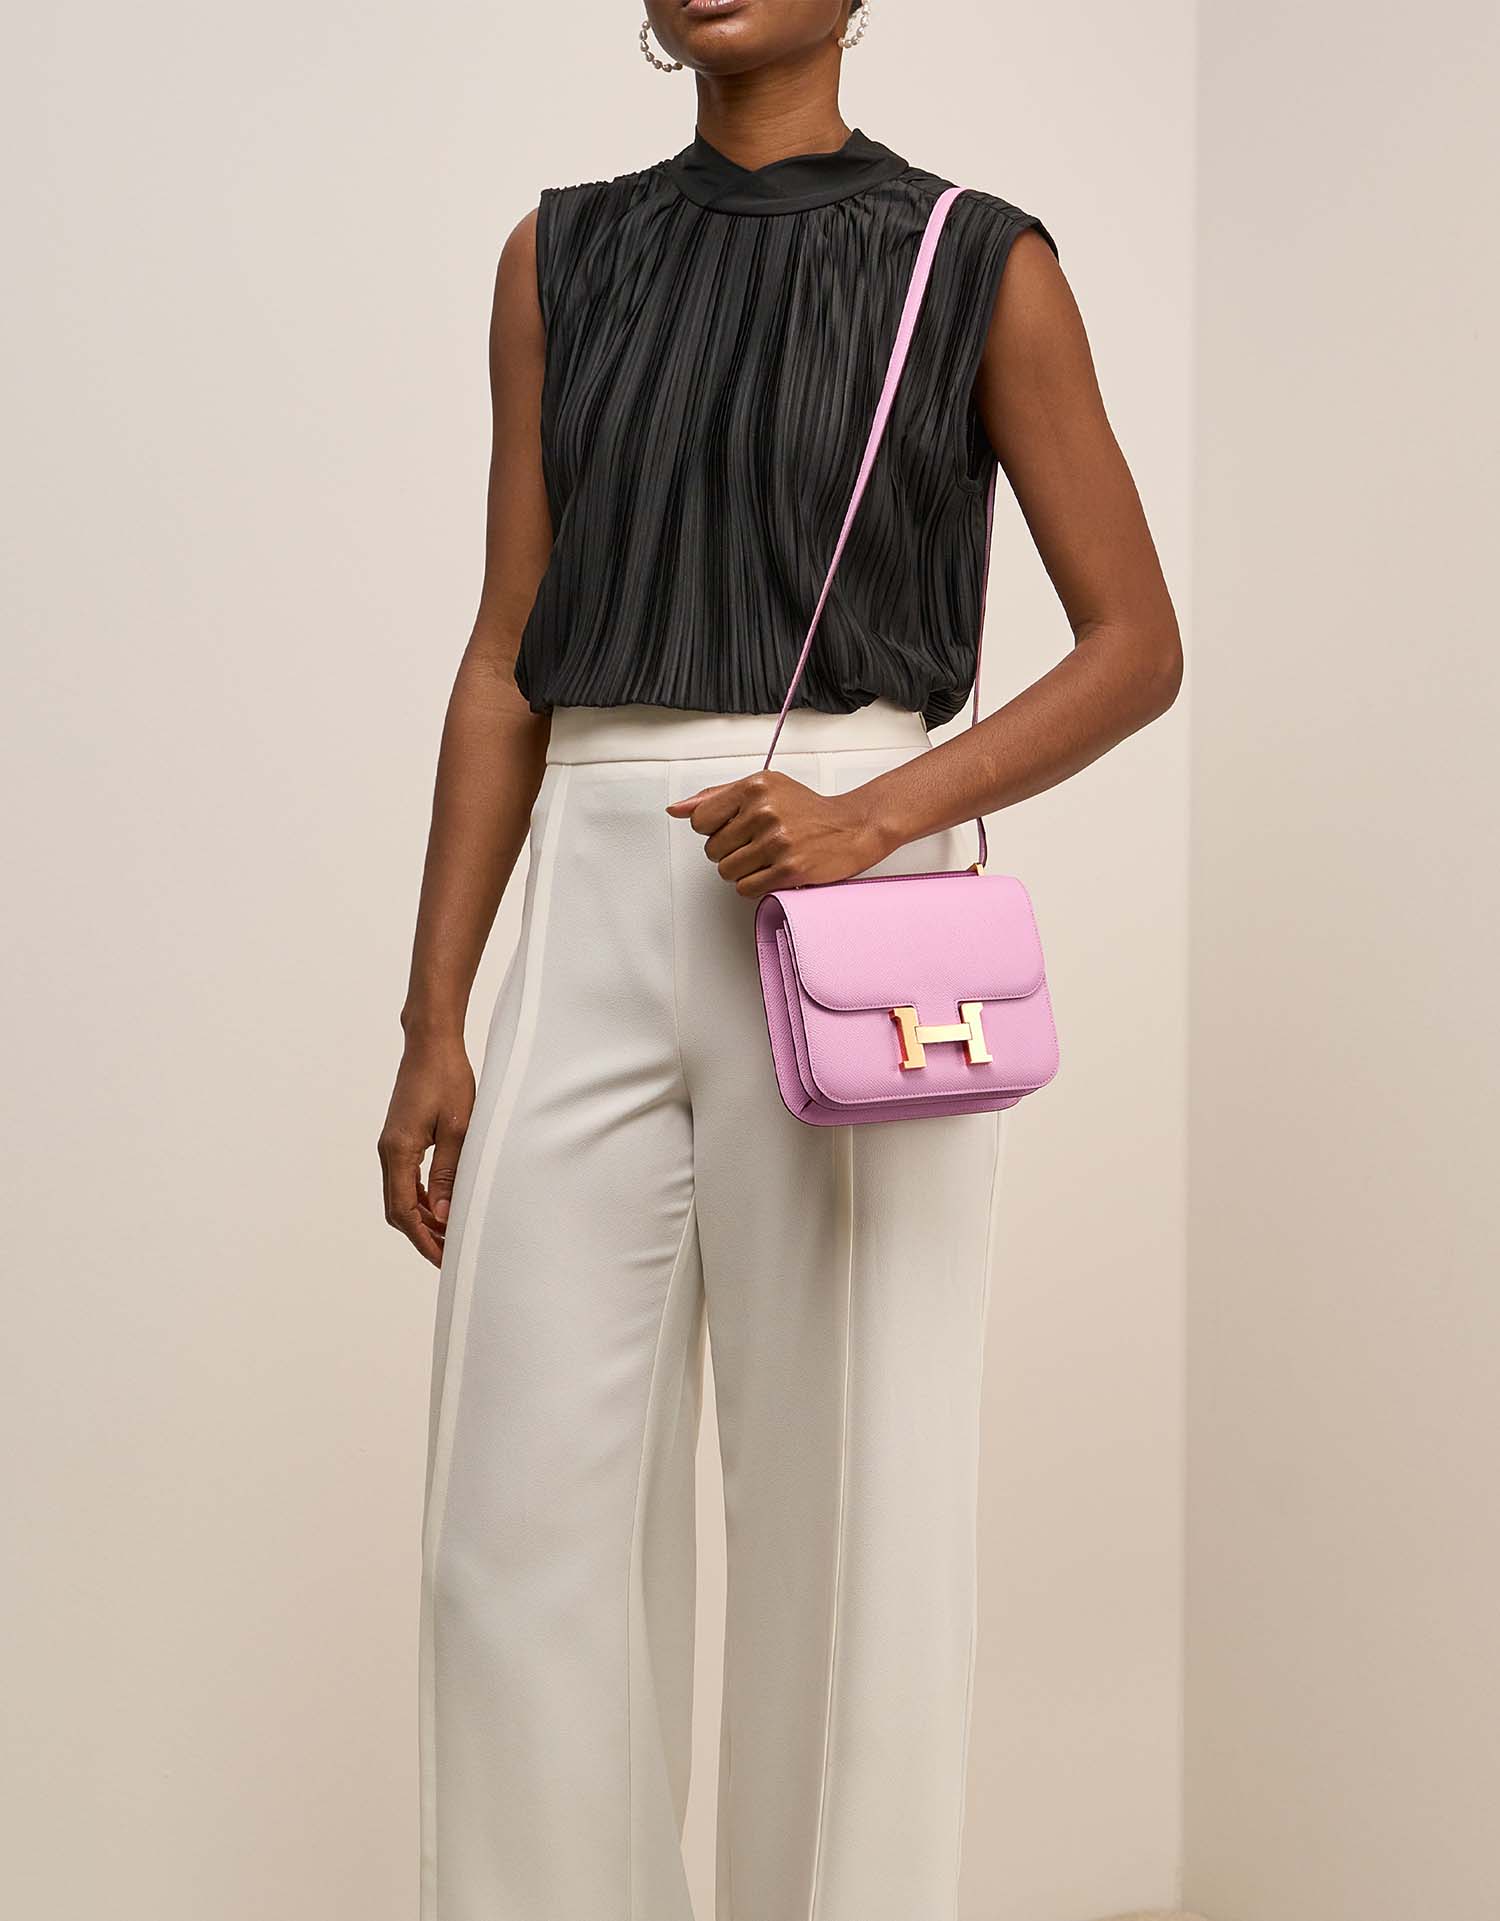 Hermès Constance 18 MauveSylvestre auf Model | Verkaufen Sie Ihre Designertasche auf Saclab.com